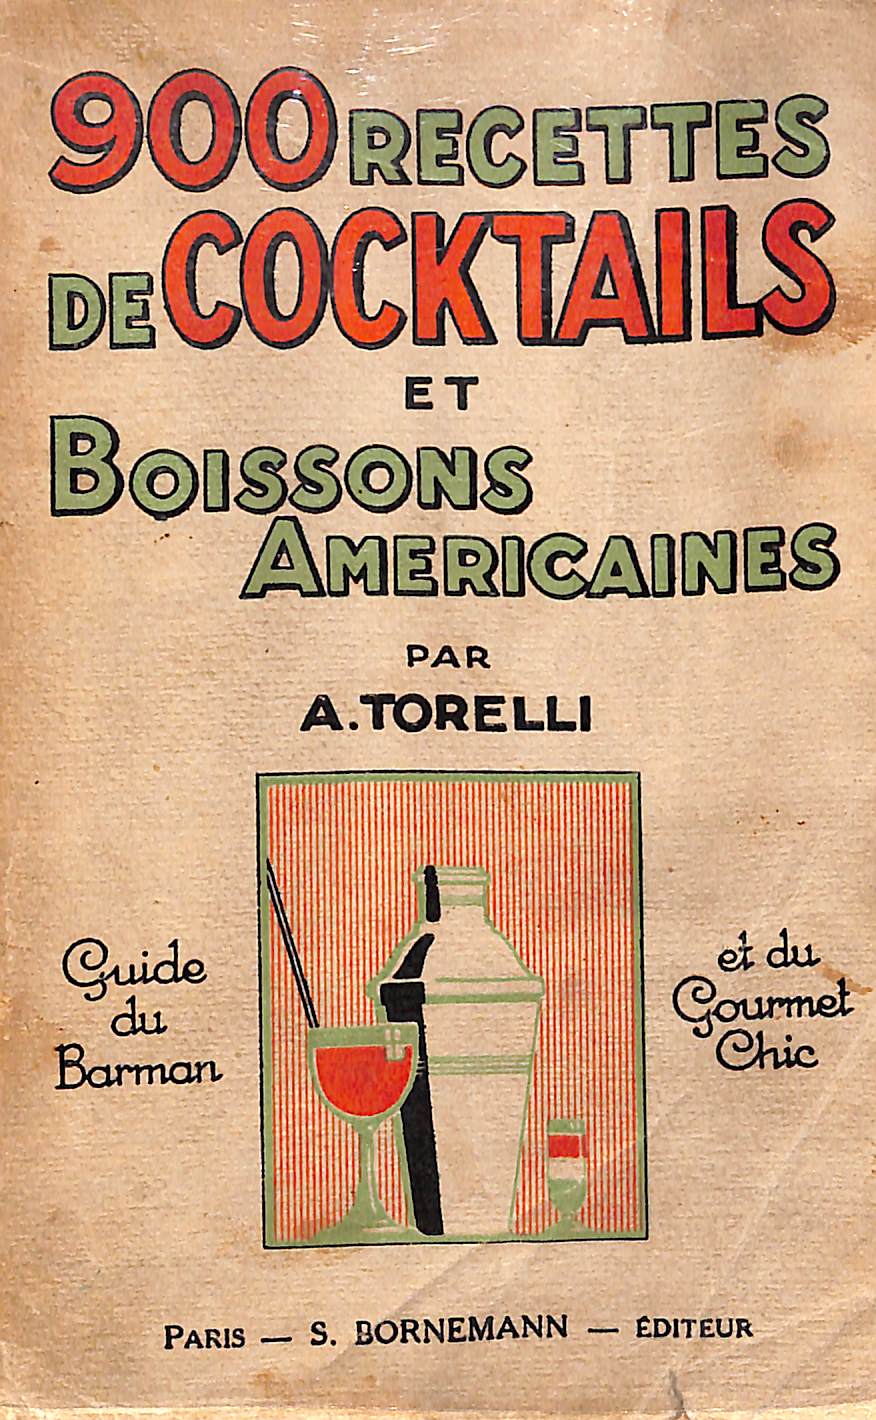 900 Recettes de Cocktails et Boissons Americaines 1927